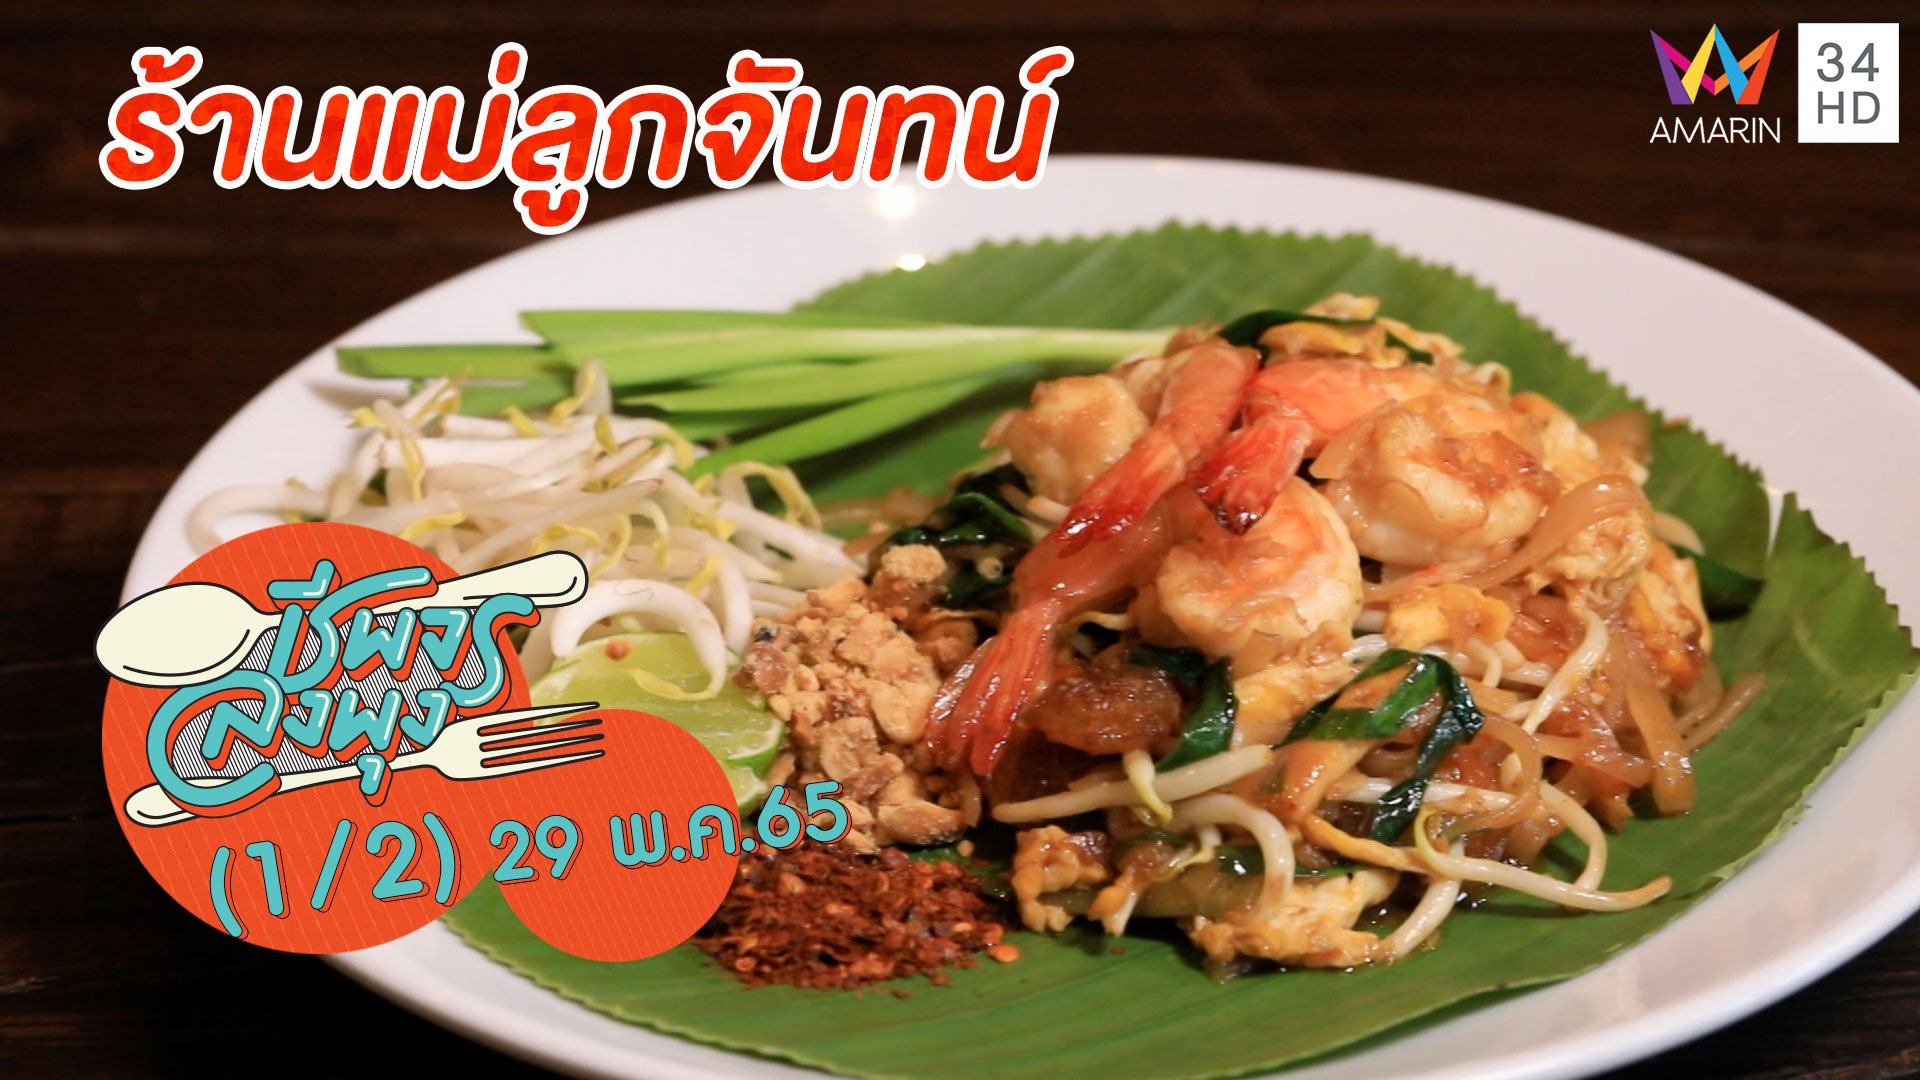 อาหารไทยสไตล์คาเฟ่ @ ร้านแม่ลูกจันทน์ | ชีพจรลงพุง | 29 พ.ค. 65 (1/2) | AMARIN TVHD34